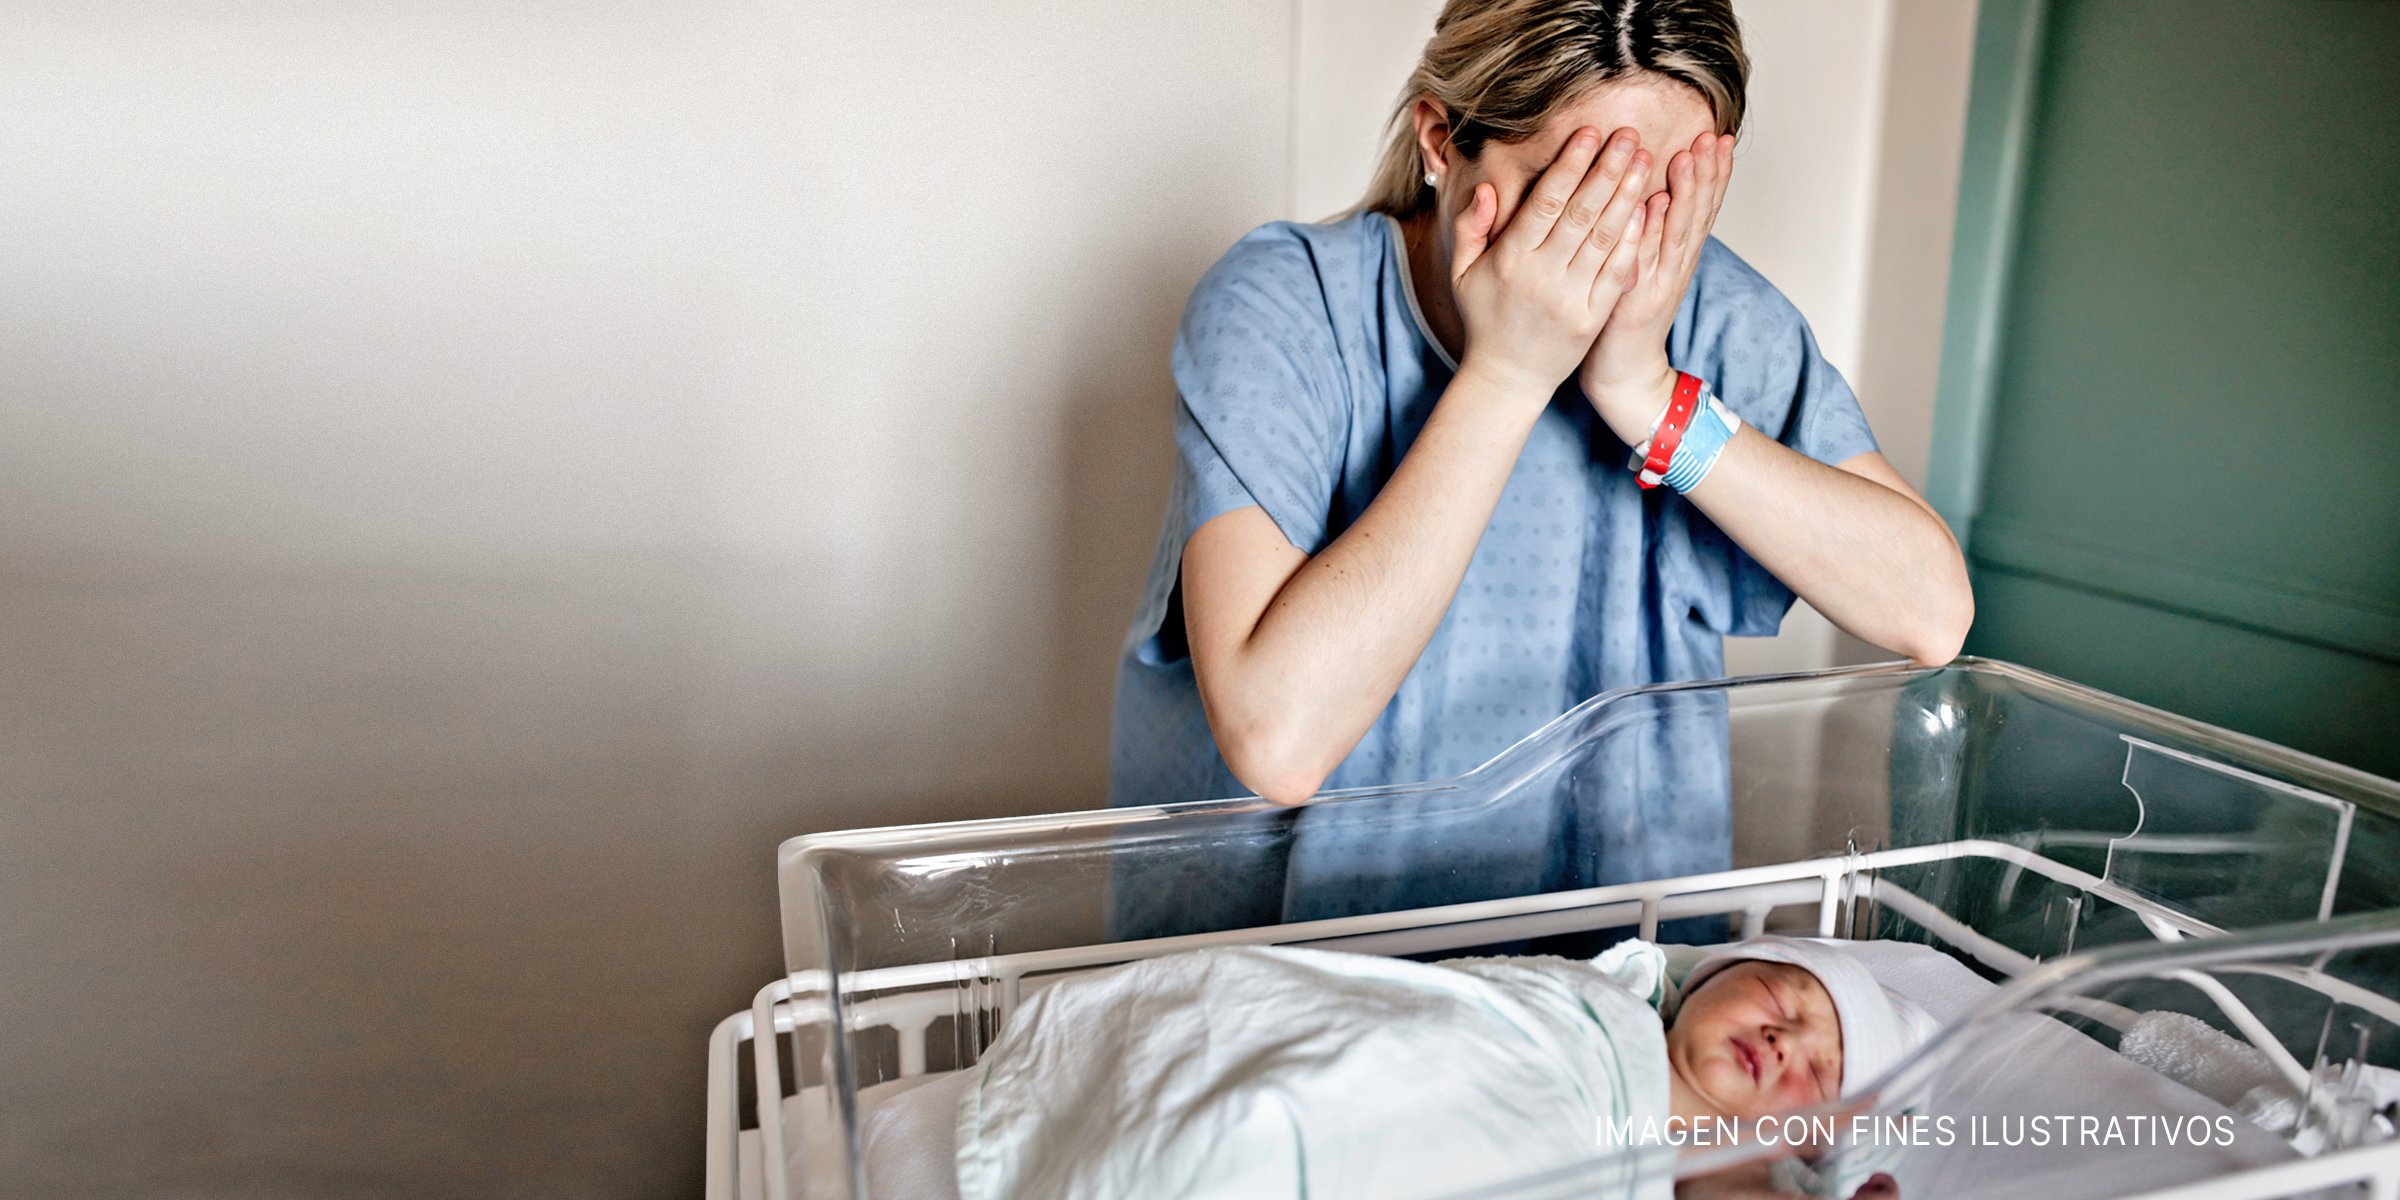 Madre llorando cerca del bebé recién nacido en la cuna | Foto: Shutterstock